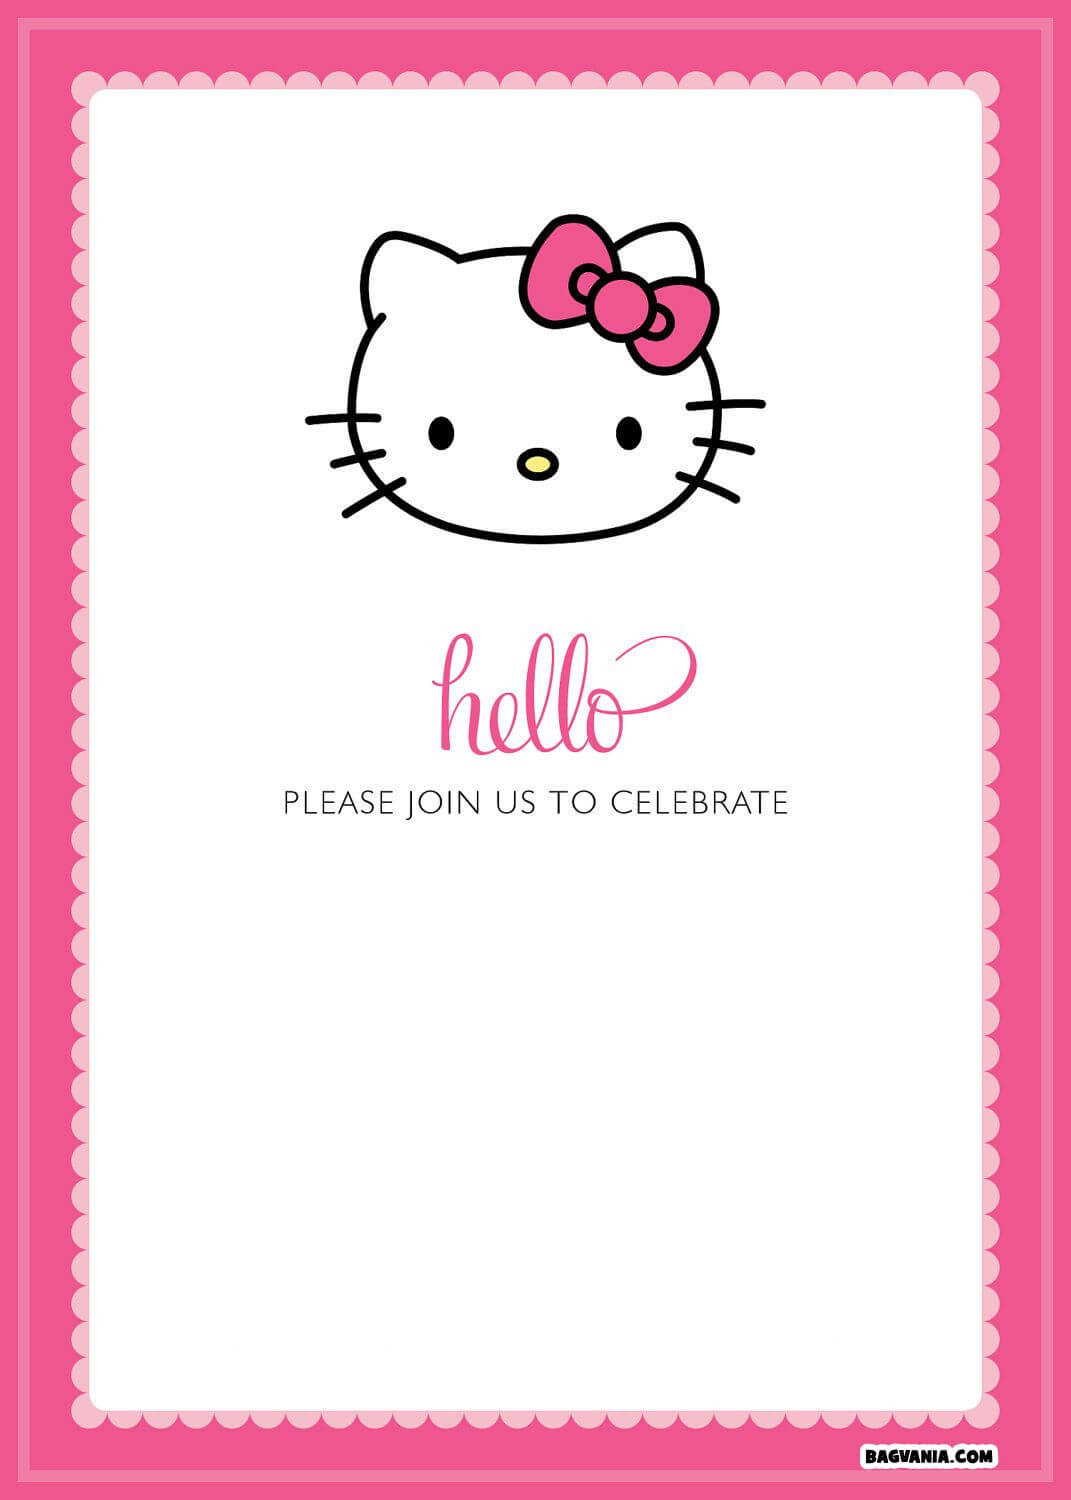 Free Printable Hello Kitty Birthday Invitations – Bagvania Inside Hello Kitty Birthday Banner Template Free